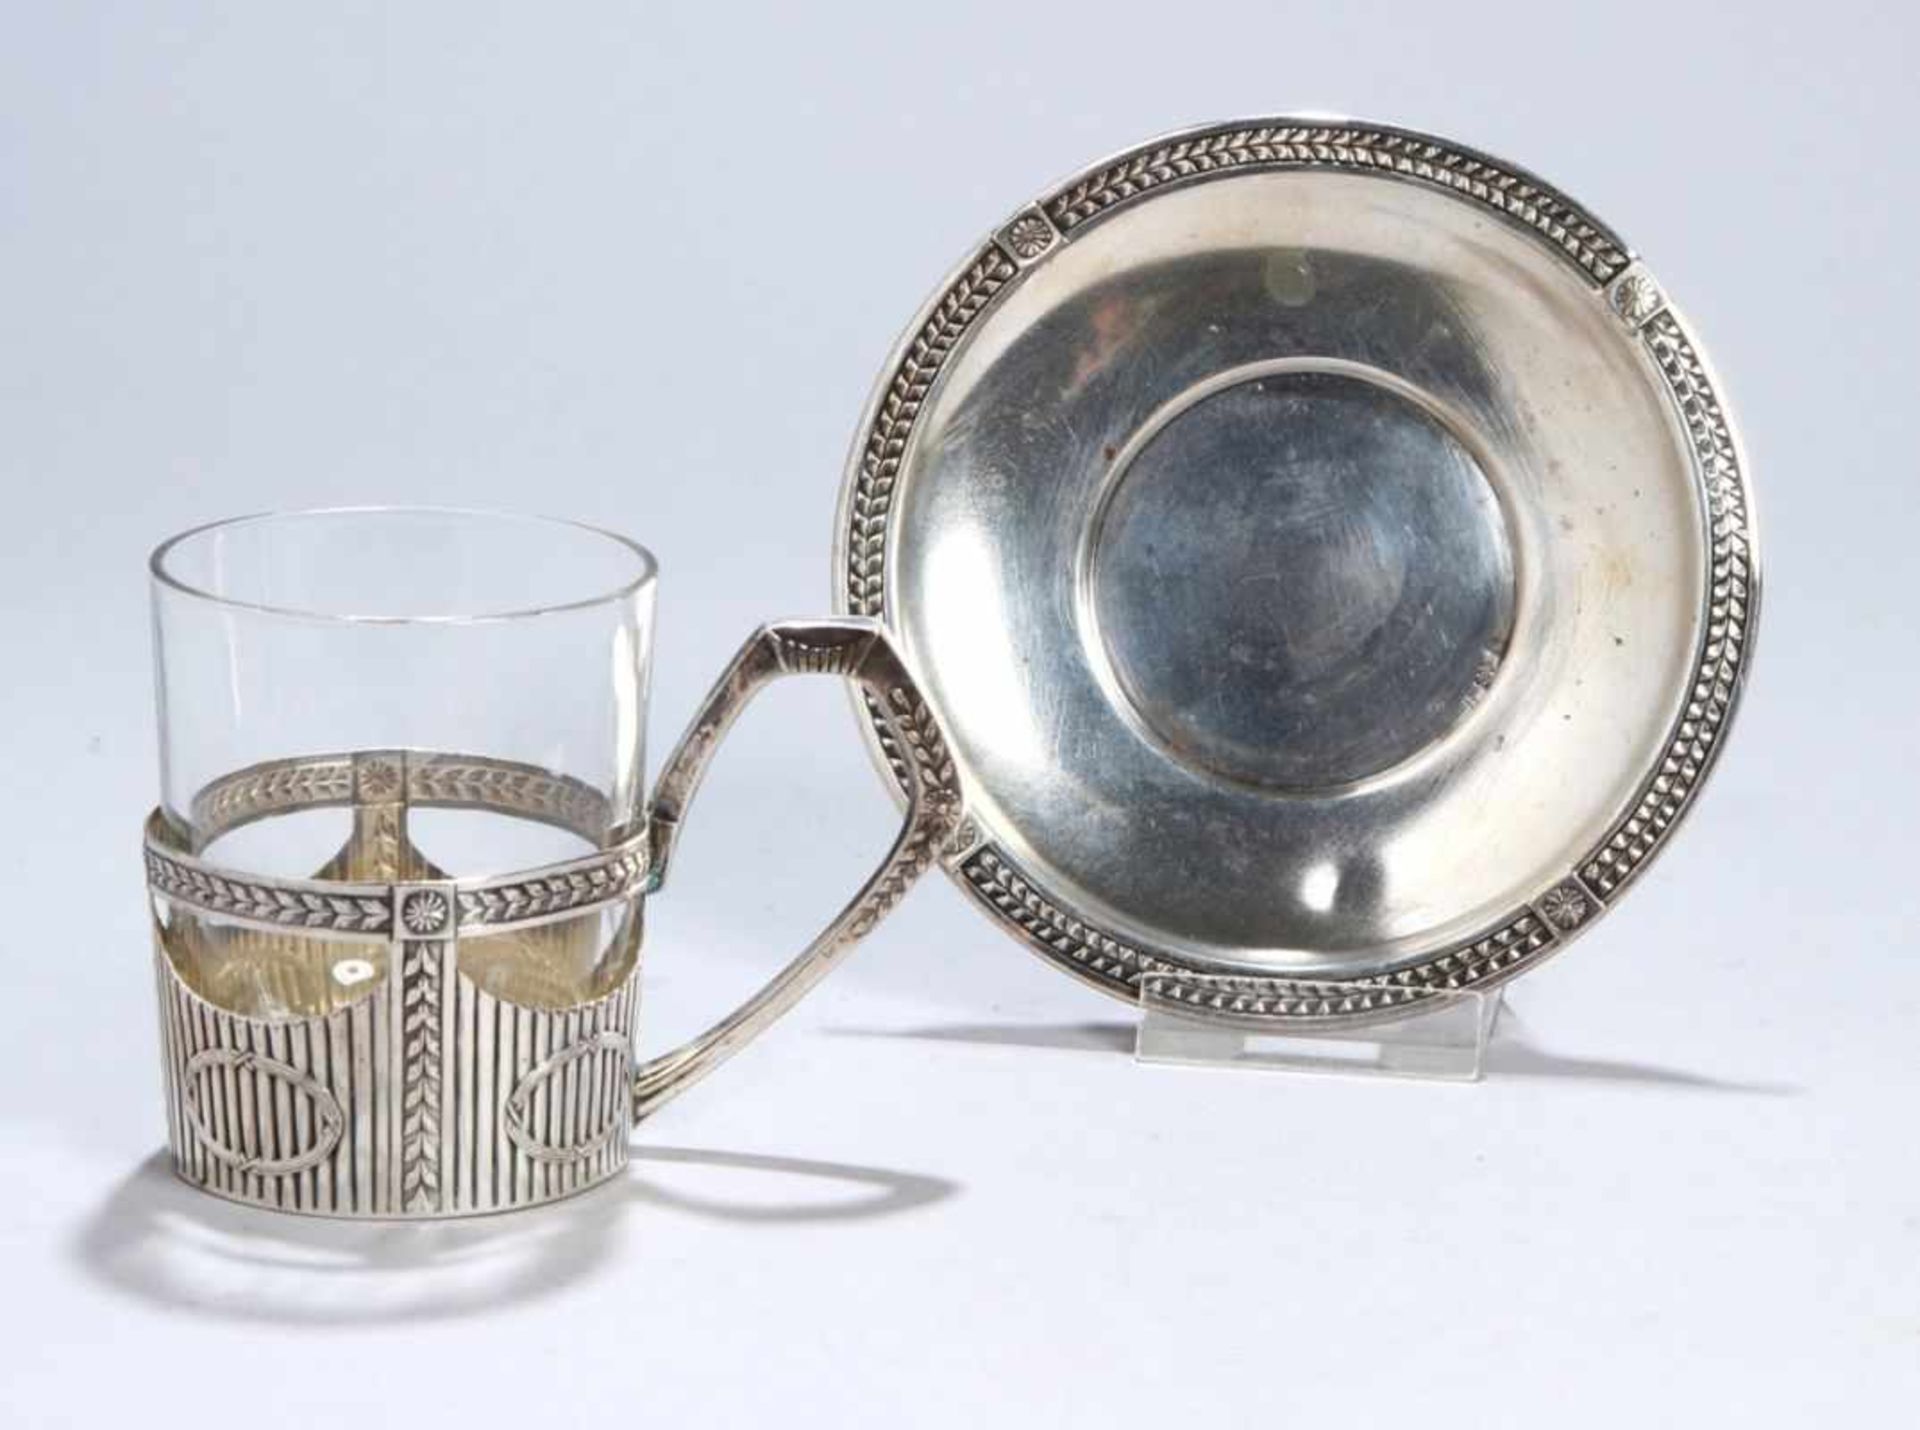 Glas-Halter mit Untertasse, dt., um 1900, Silber 800, Louis Seize Dekor, farbloserGlaseinsatz,